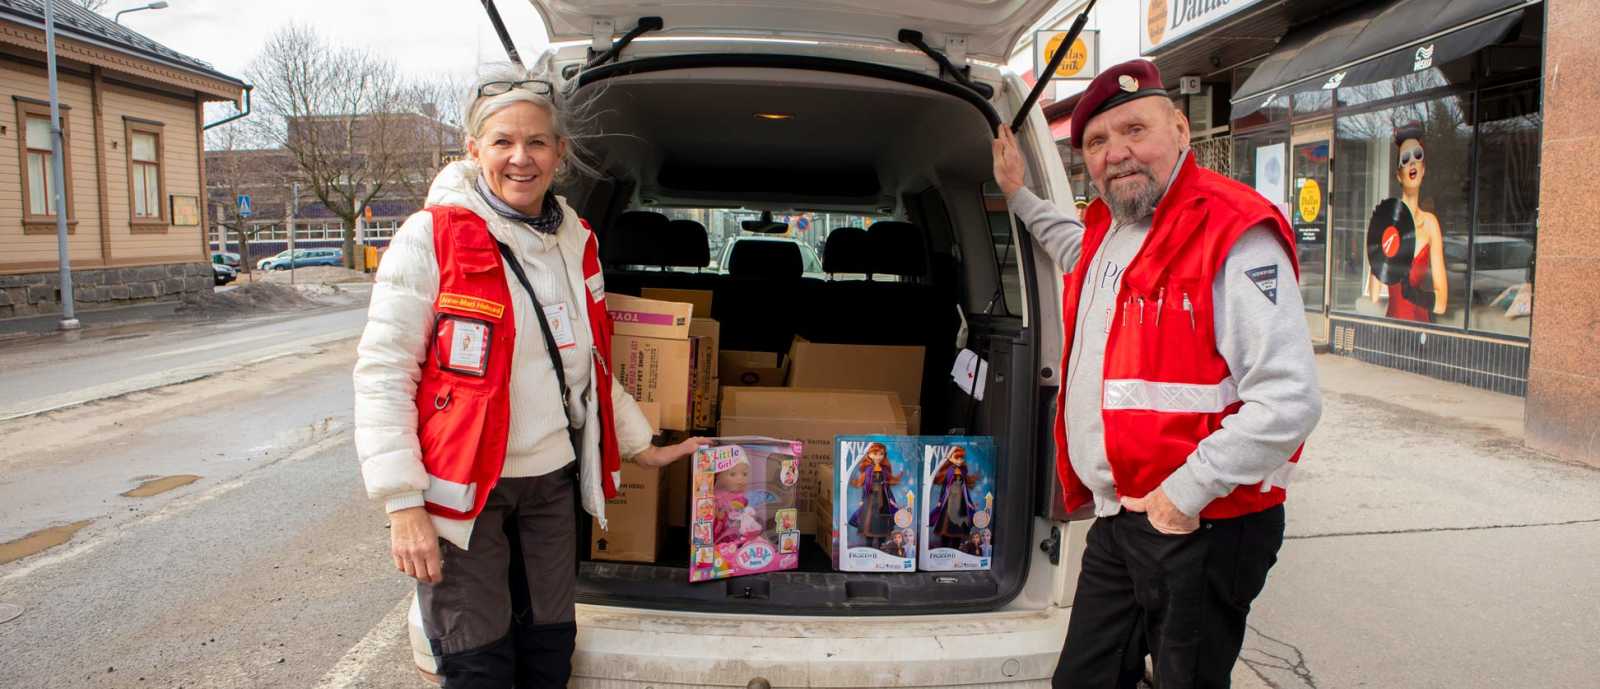 SPR:n Anne-Mari Hakuni pakkaamassa kollegansa kanssa LähiTapiola Länsi-Suomen lahjoittamia leluja pakettiautoon.